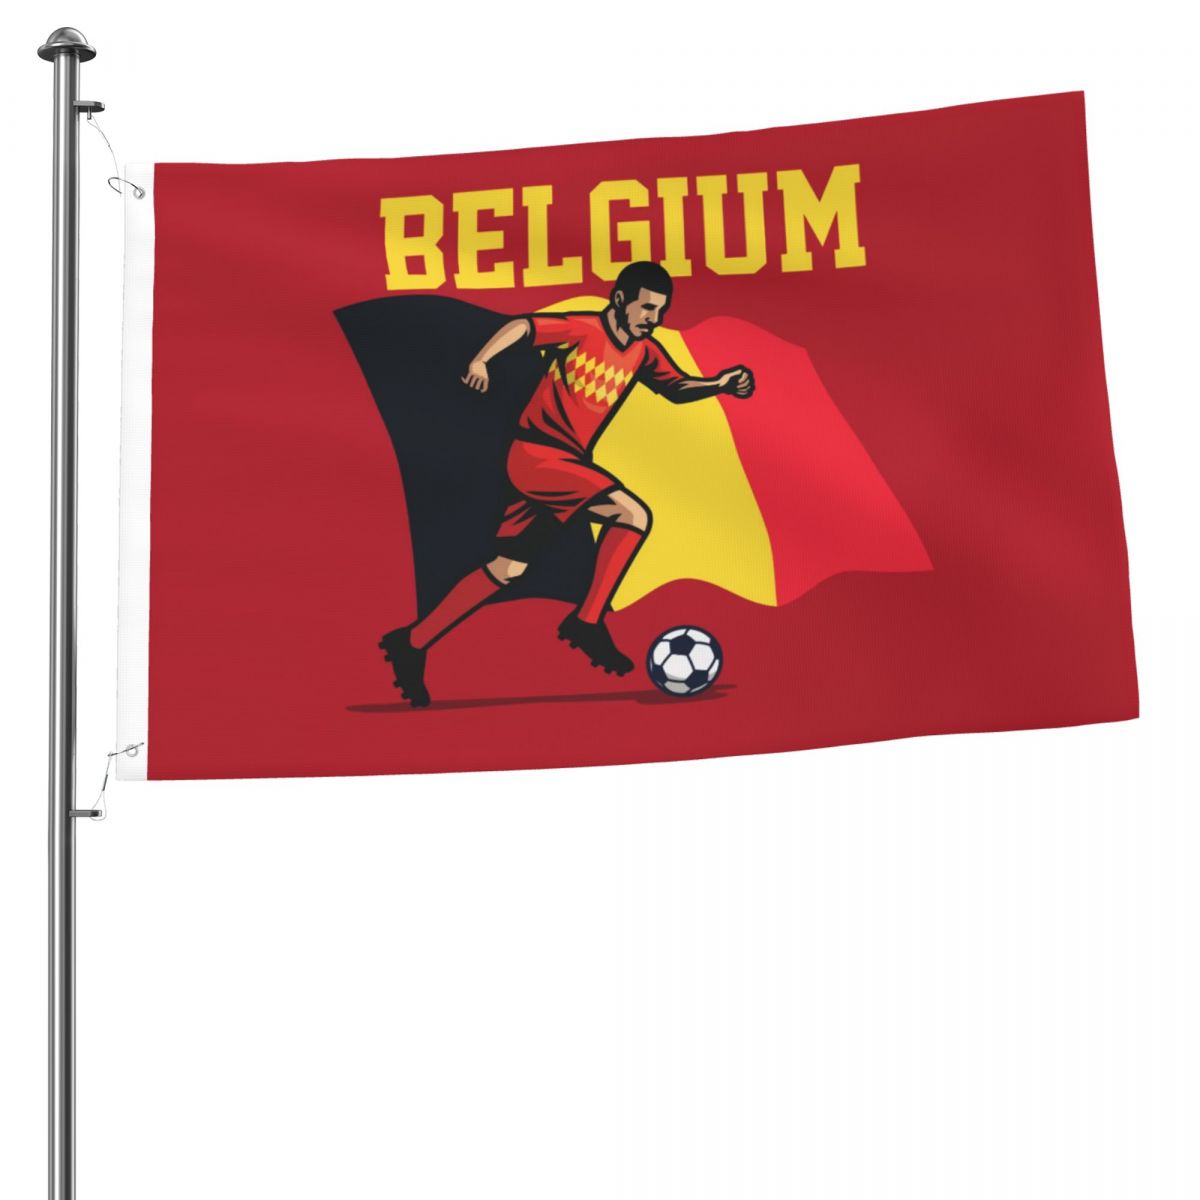 Belgium Soccer Player 2x3 FT UV Resistant Flag